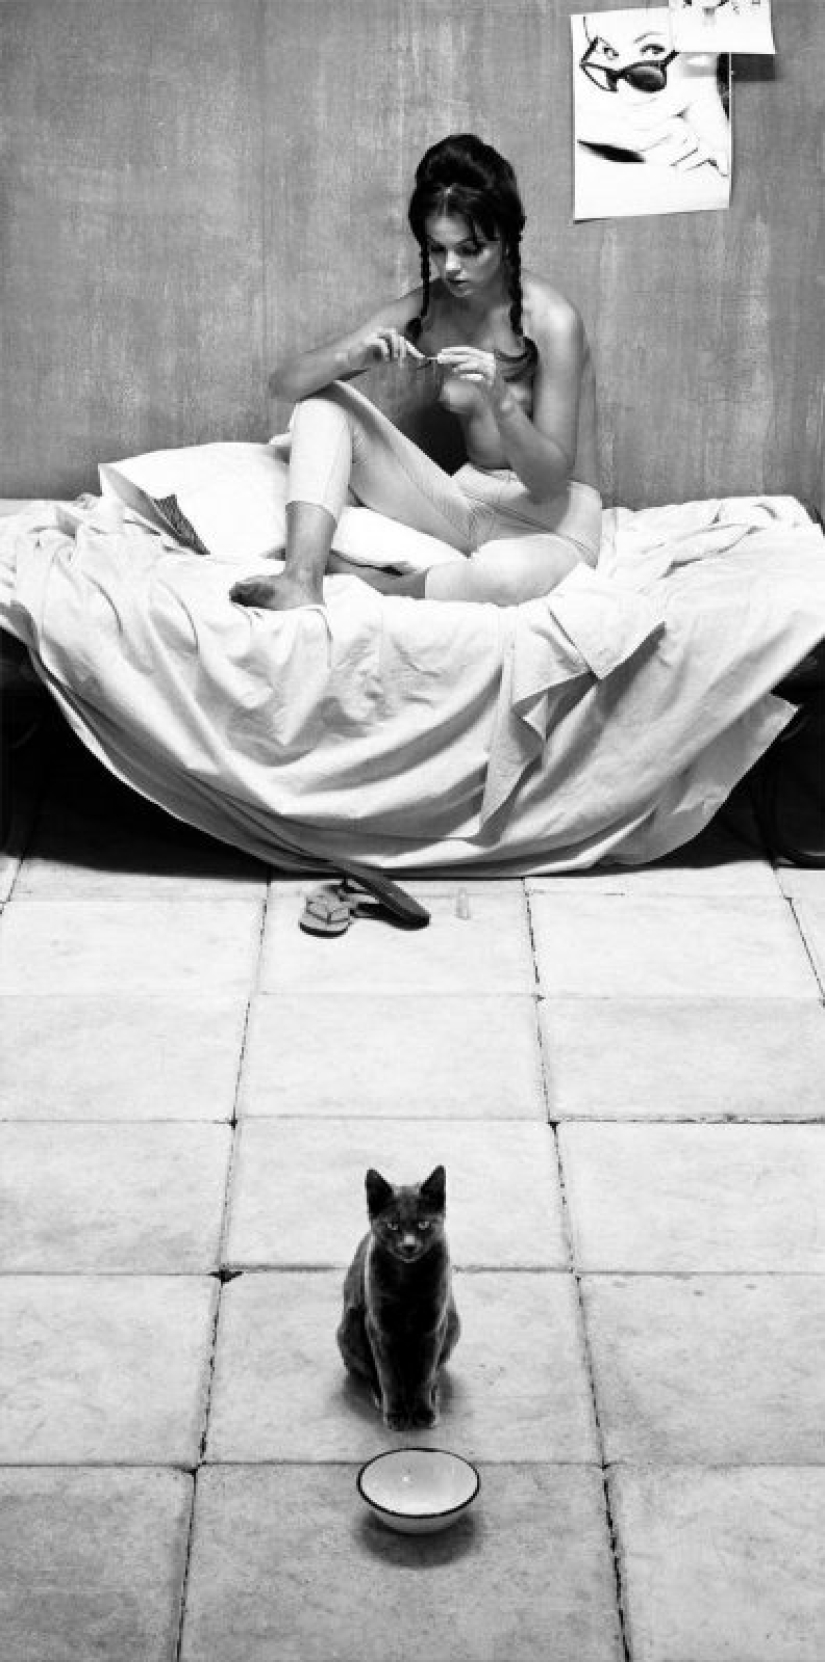 Sam Haskins es un clásico mundial de la fotografía de desnudos y solo un cantante de belleza femenina